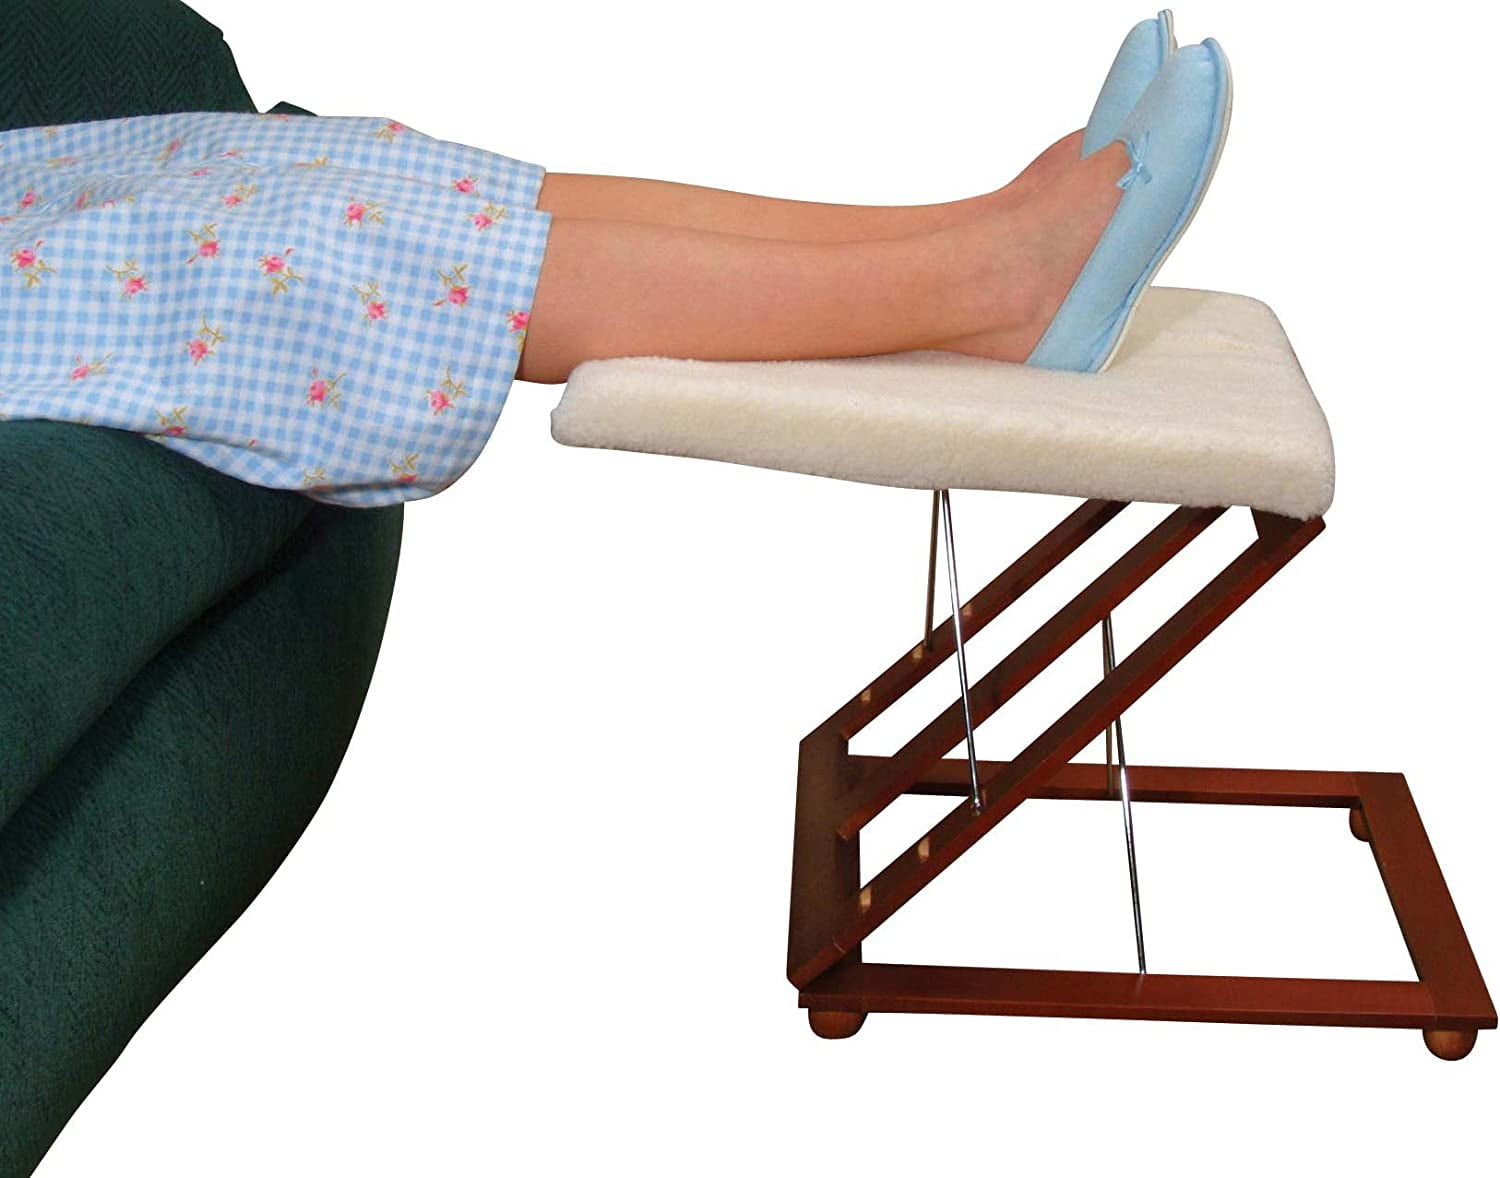 Height-adjustable footstool - Basic 951 - Score BV